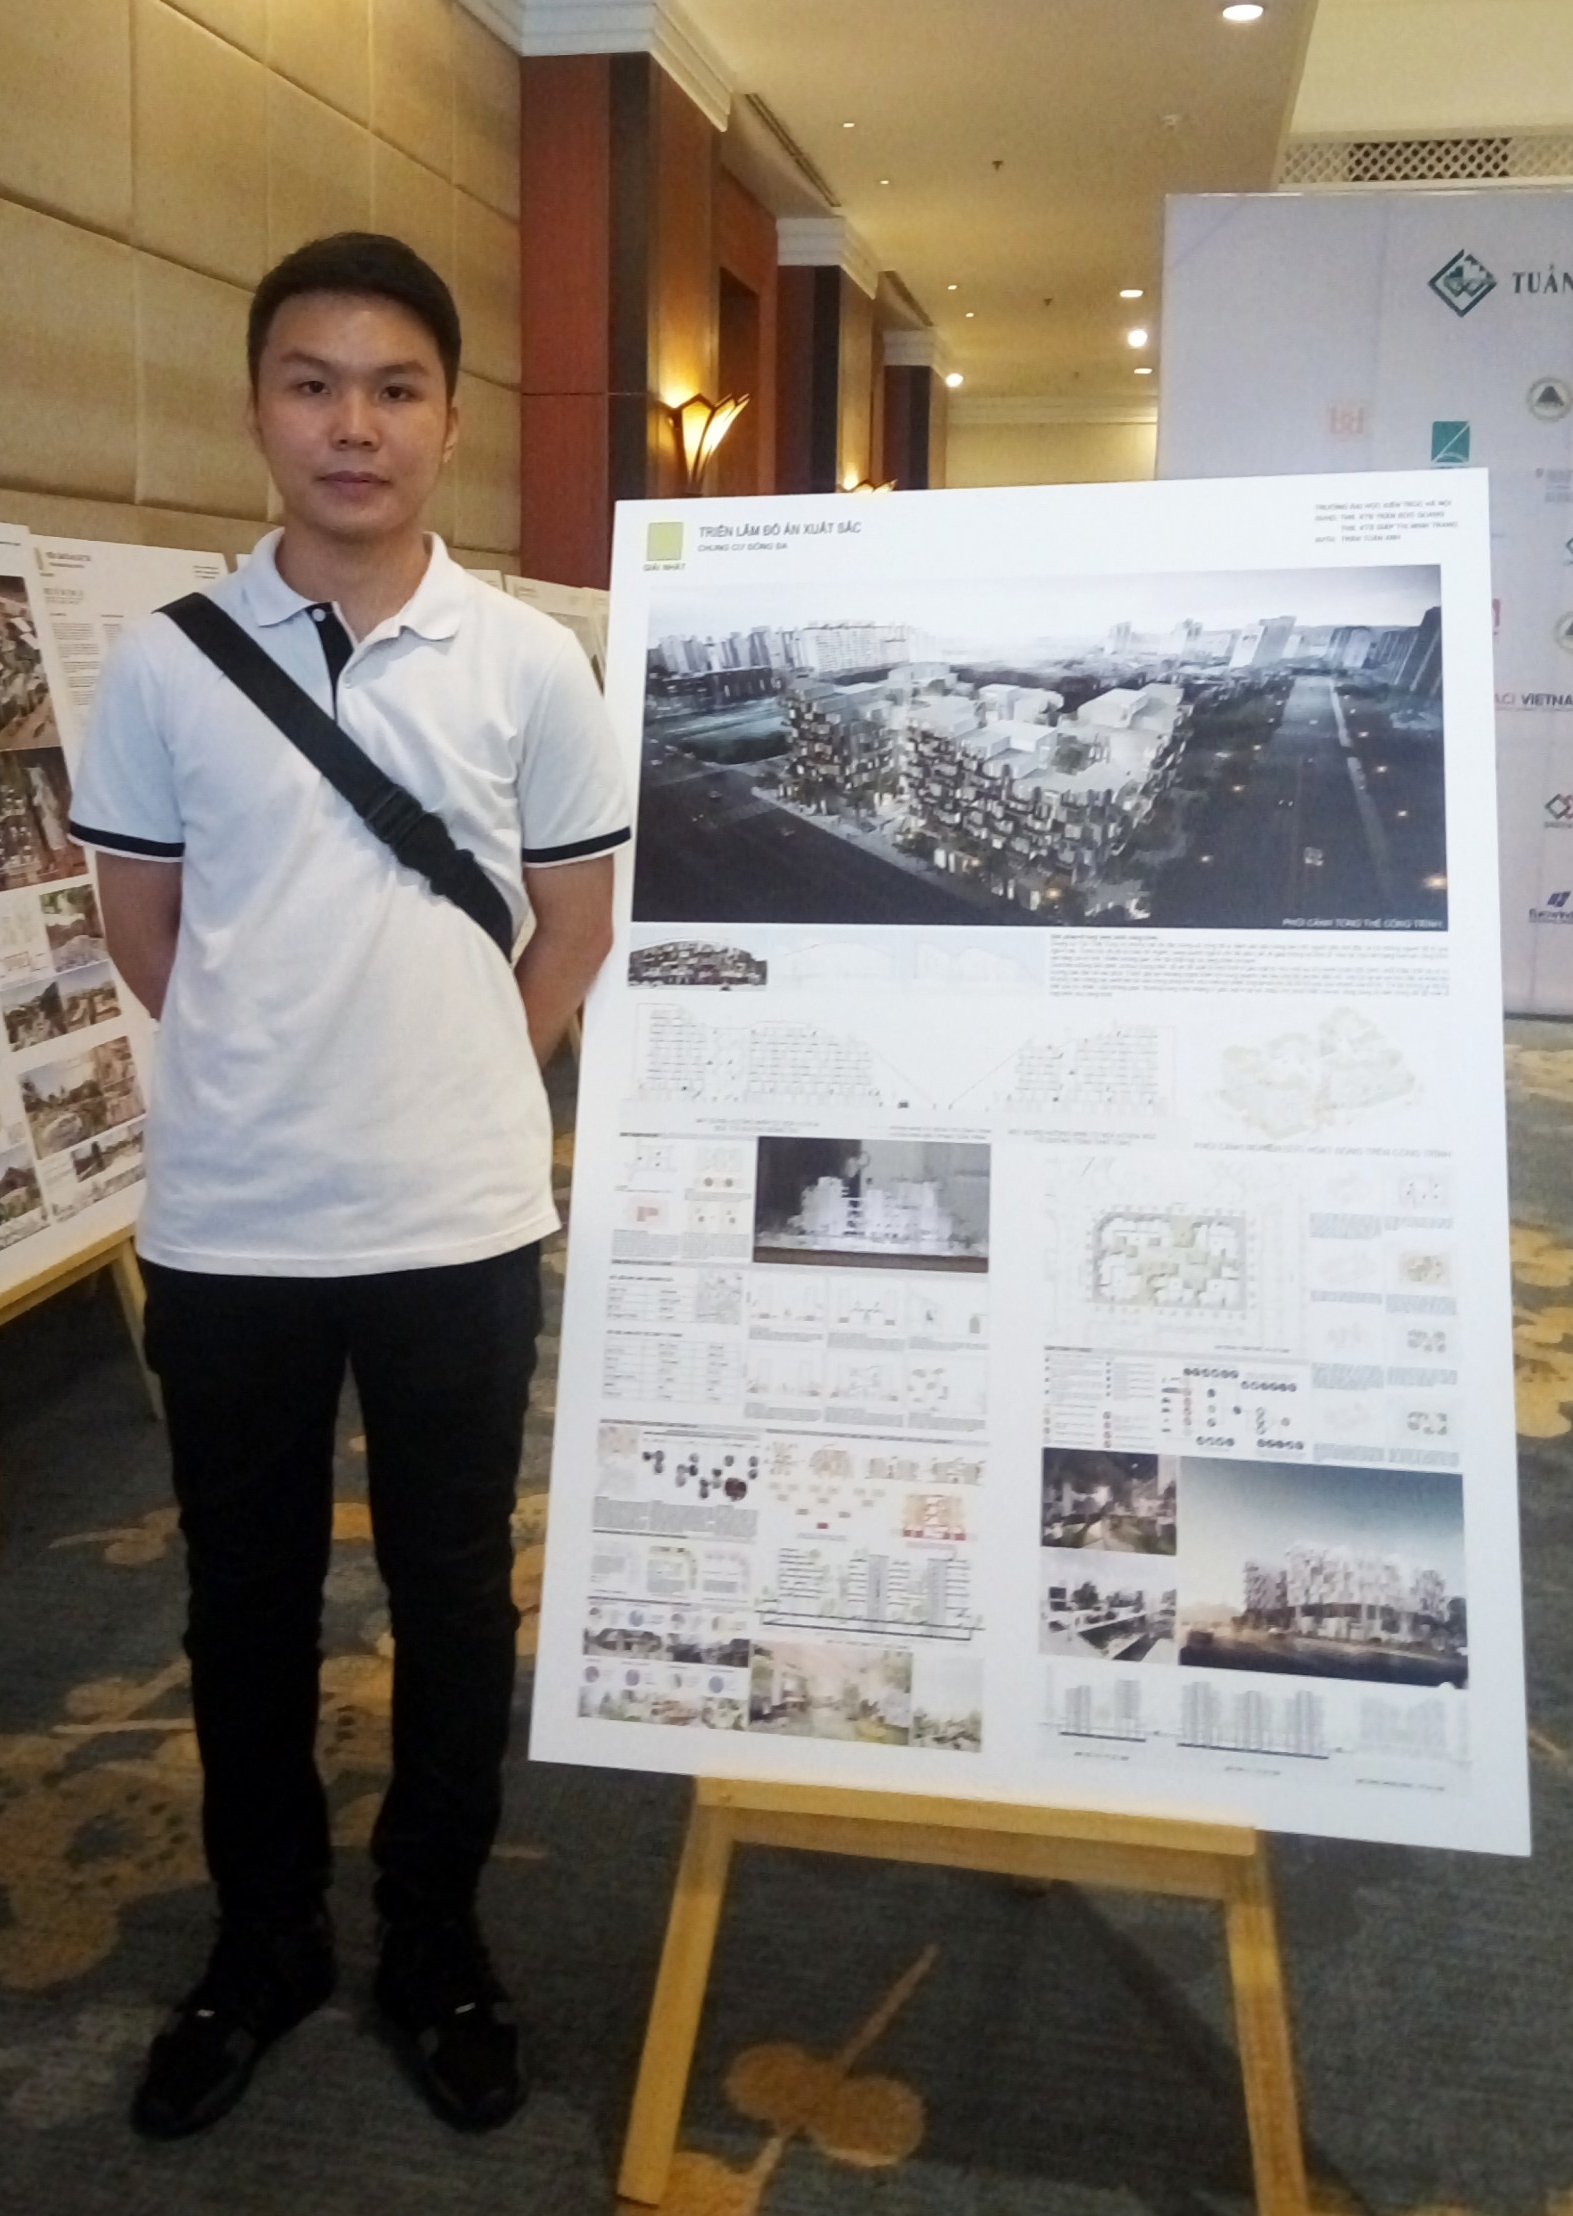 Điển hình là đồ án với đề tài “Chung cư Đống Đa” của sinh viên Trần Tuấn Anh, Đại học Kiến trúc Hà Nội giành giải xuất sắc.